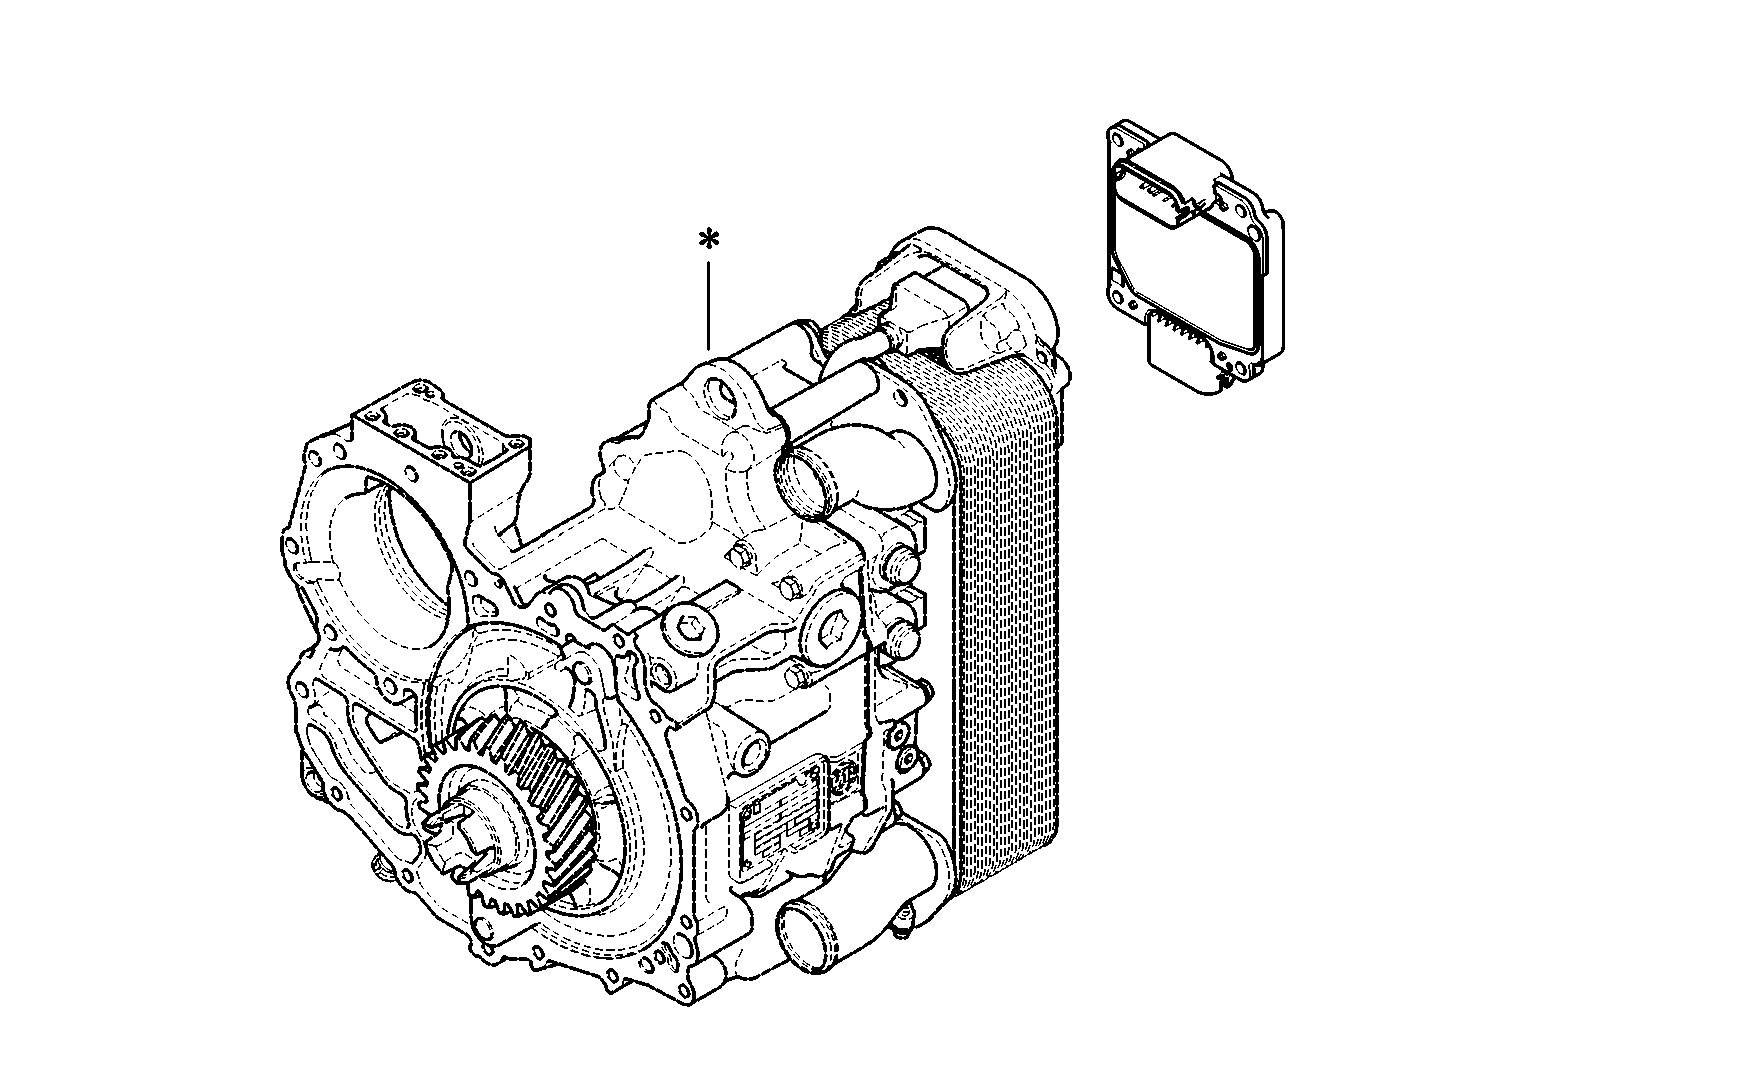 drawing for DAF 1957045 - EST 52 (figure 2)